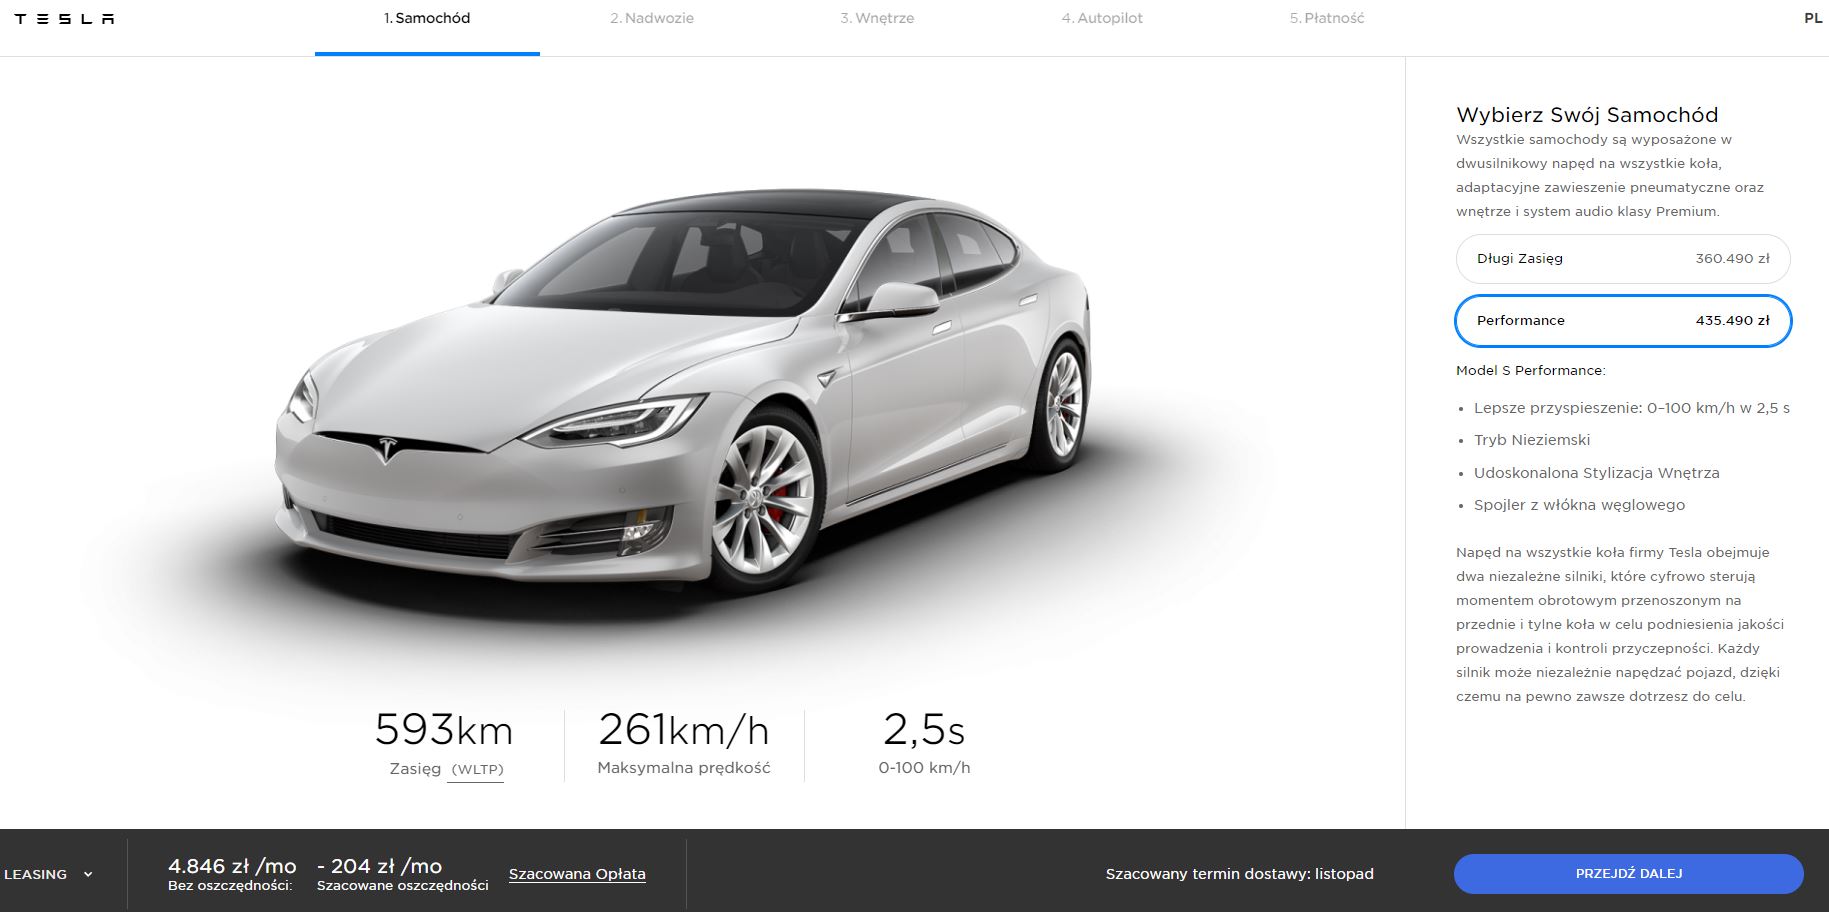 Tesla Model S polska cena